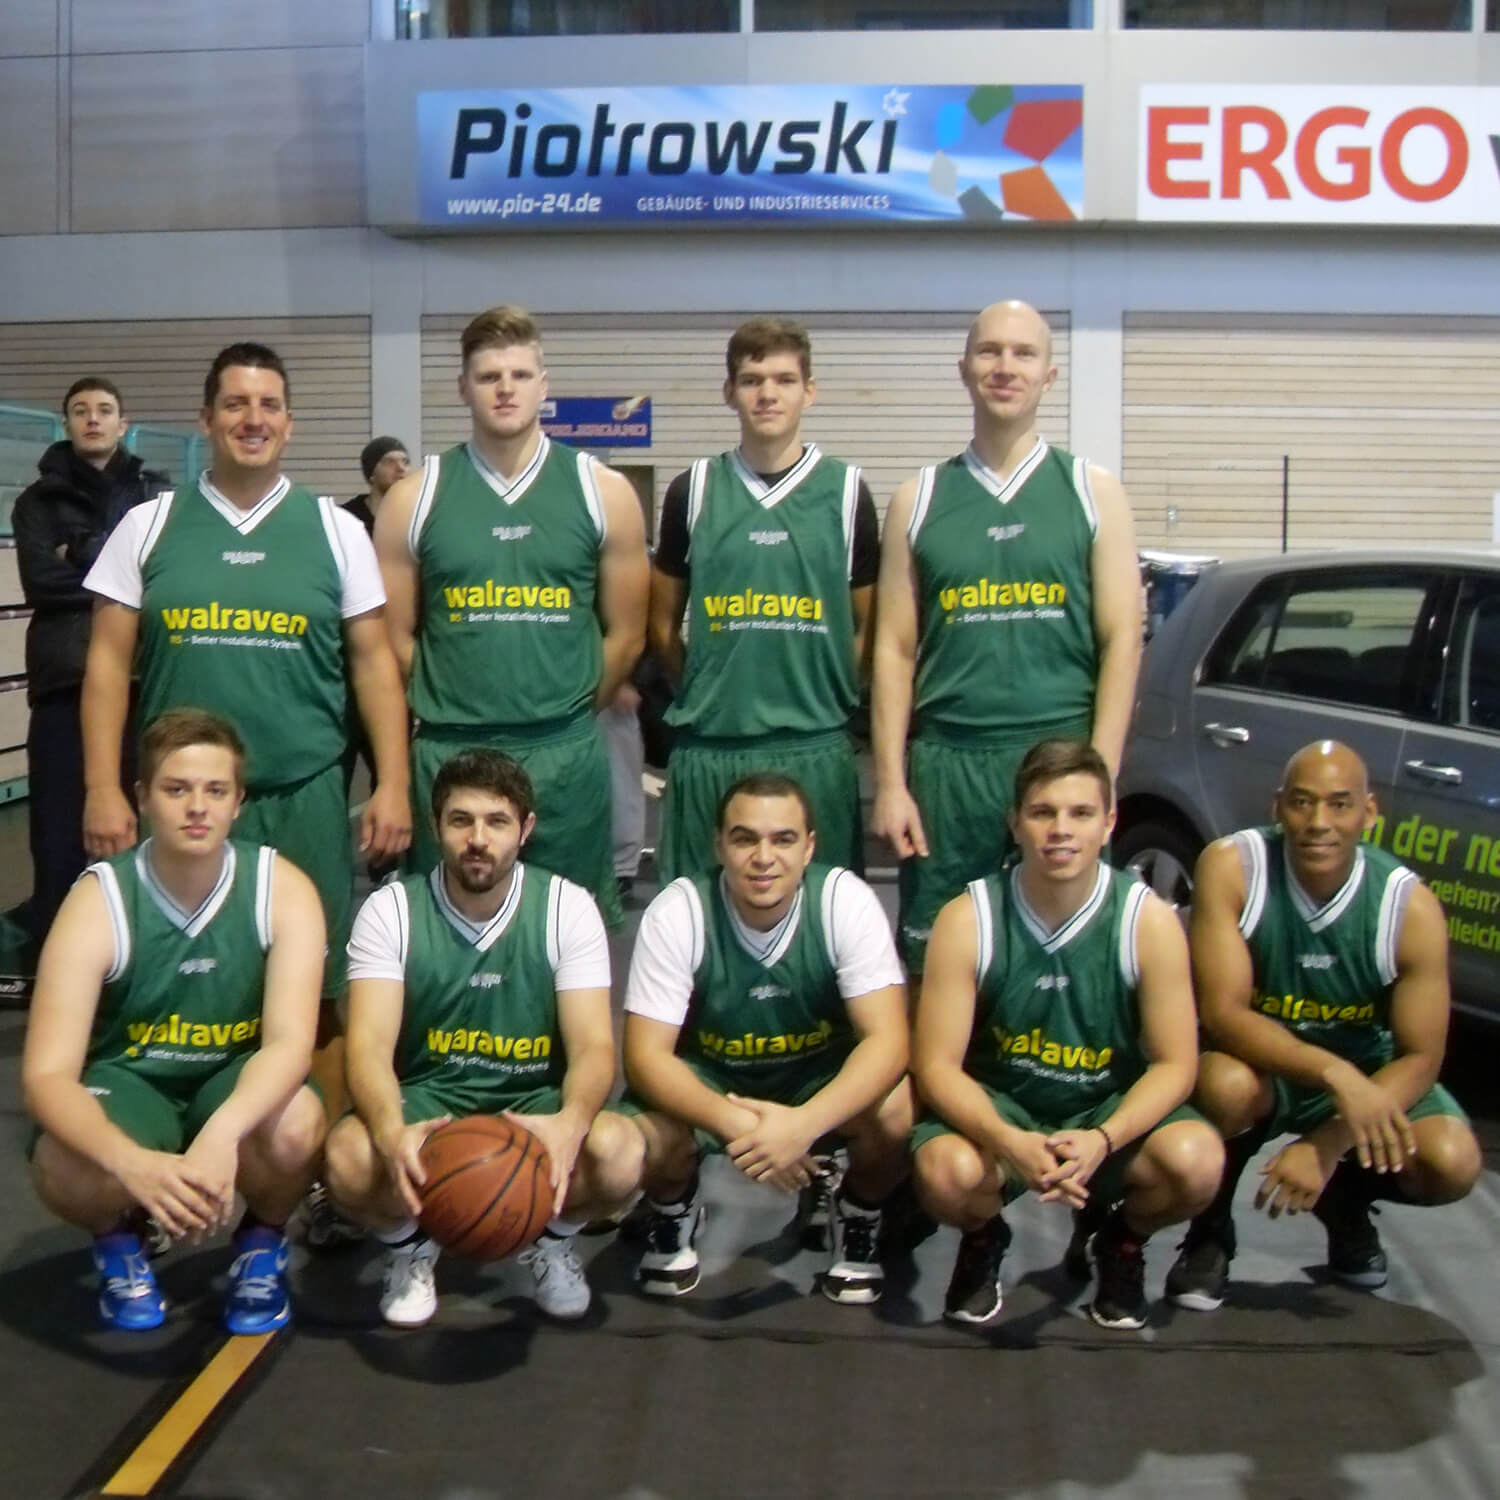 Teamfoto des Basketball Firmenteams der Walraven GmbH, entstanden bei einem Spaßturnier. Abgebildet sind neun Mitarbeiter in grünen Jerseys in zwei Reihen, ein Spieler hält einen Basketball.